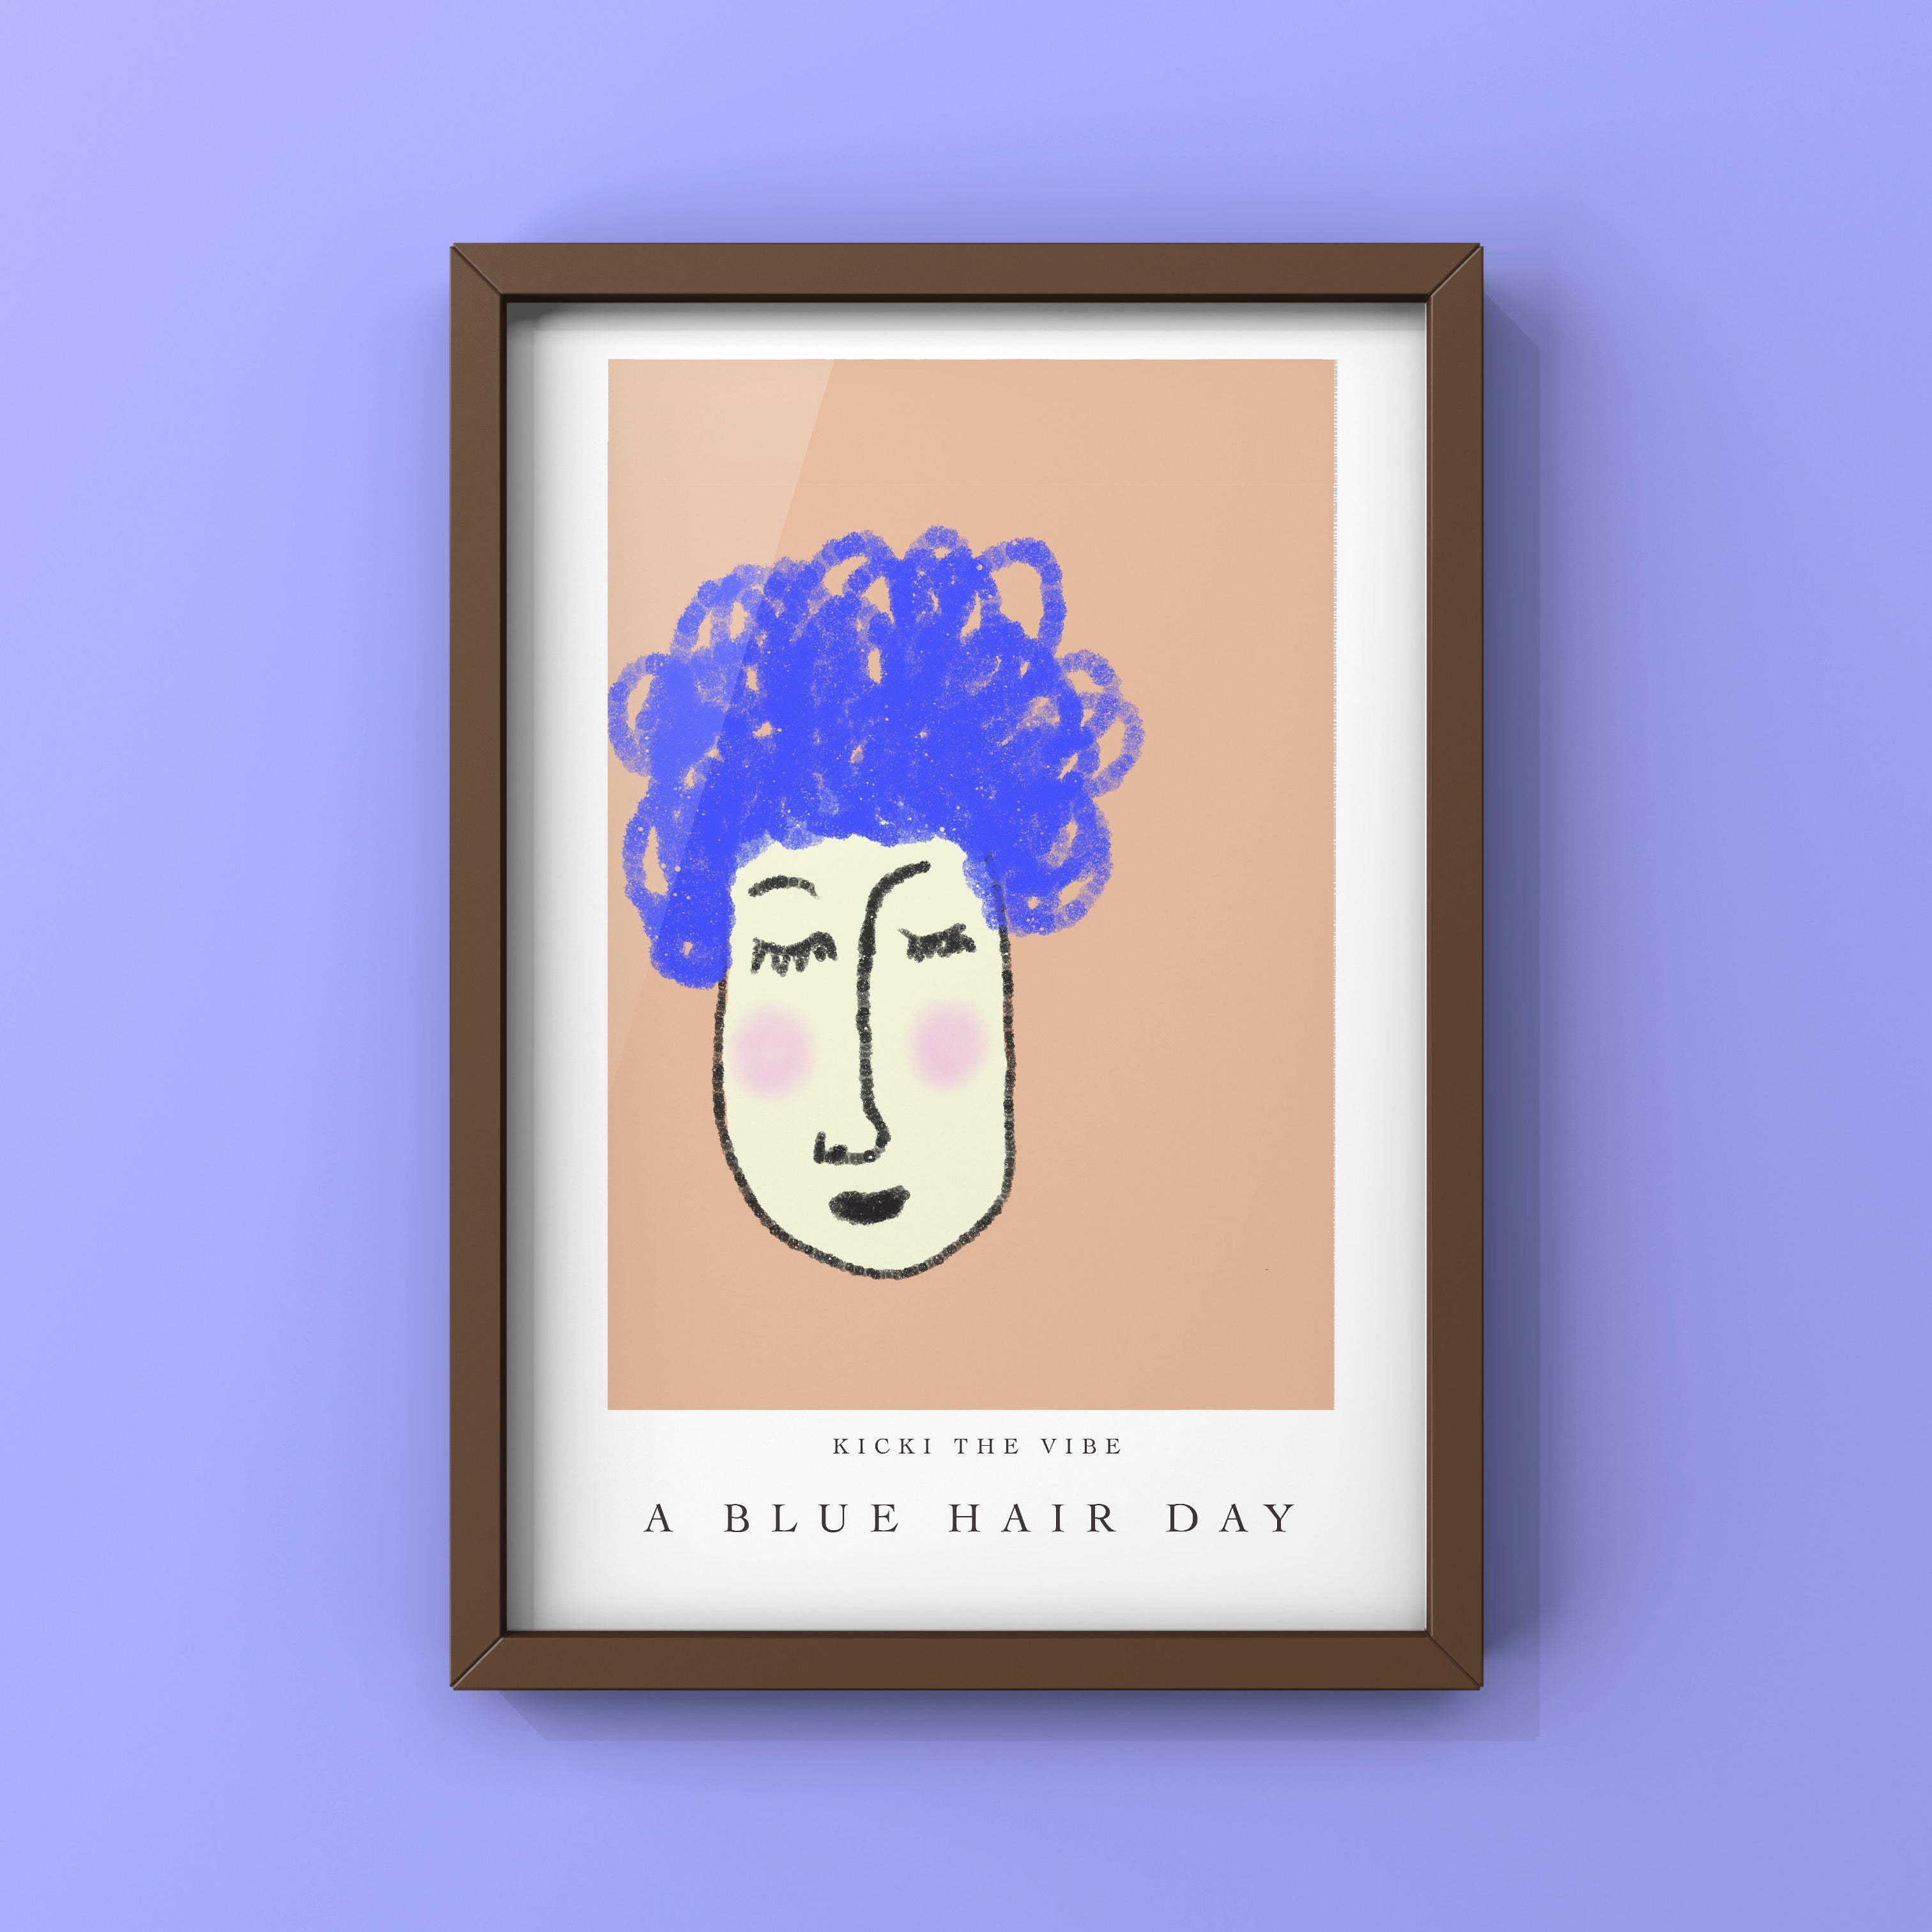 A blue hair day